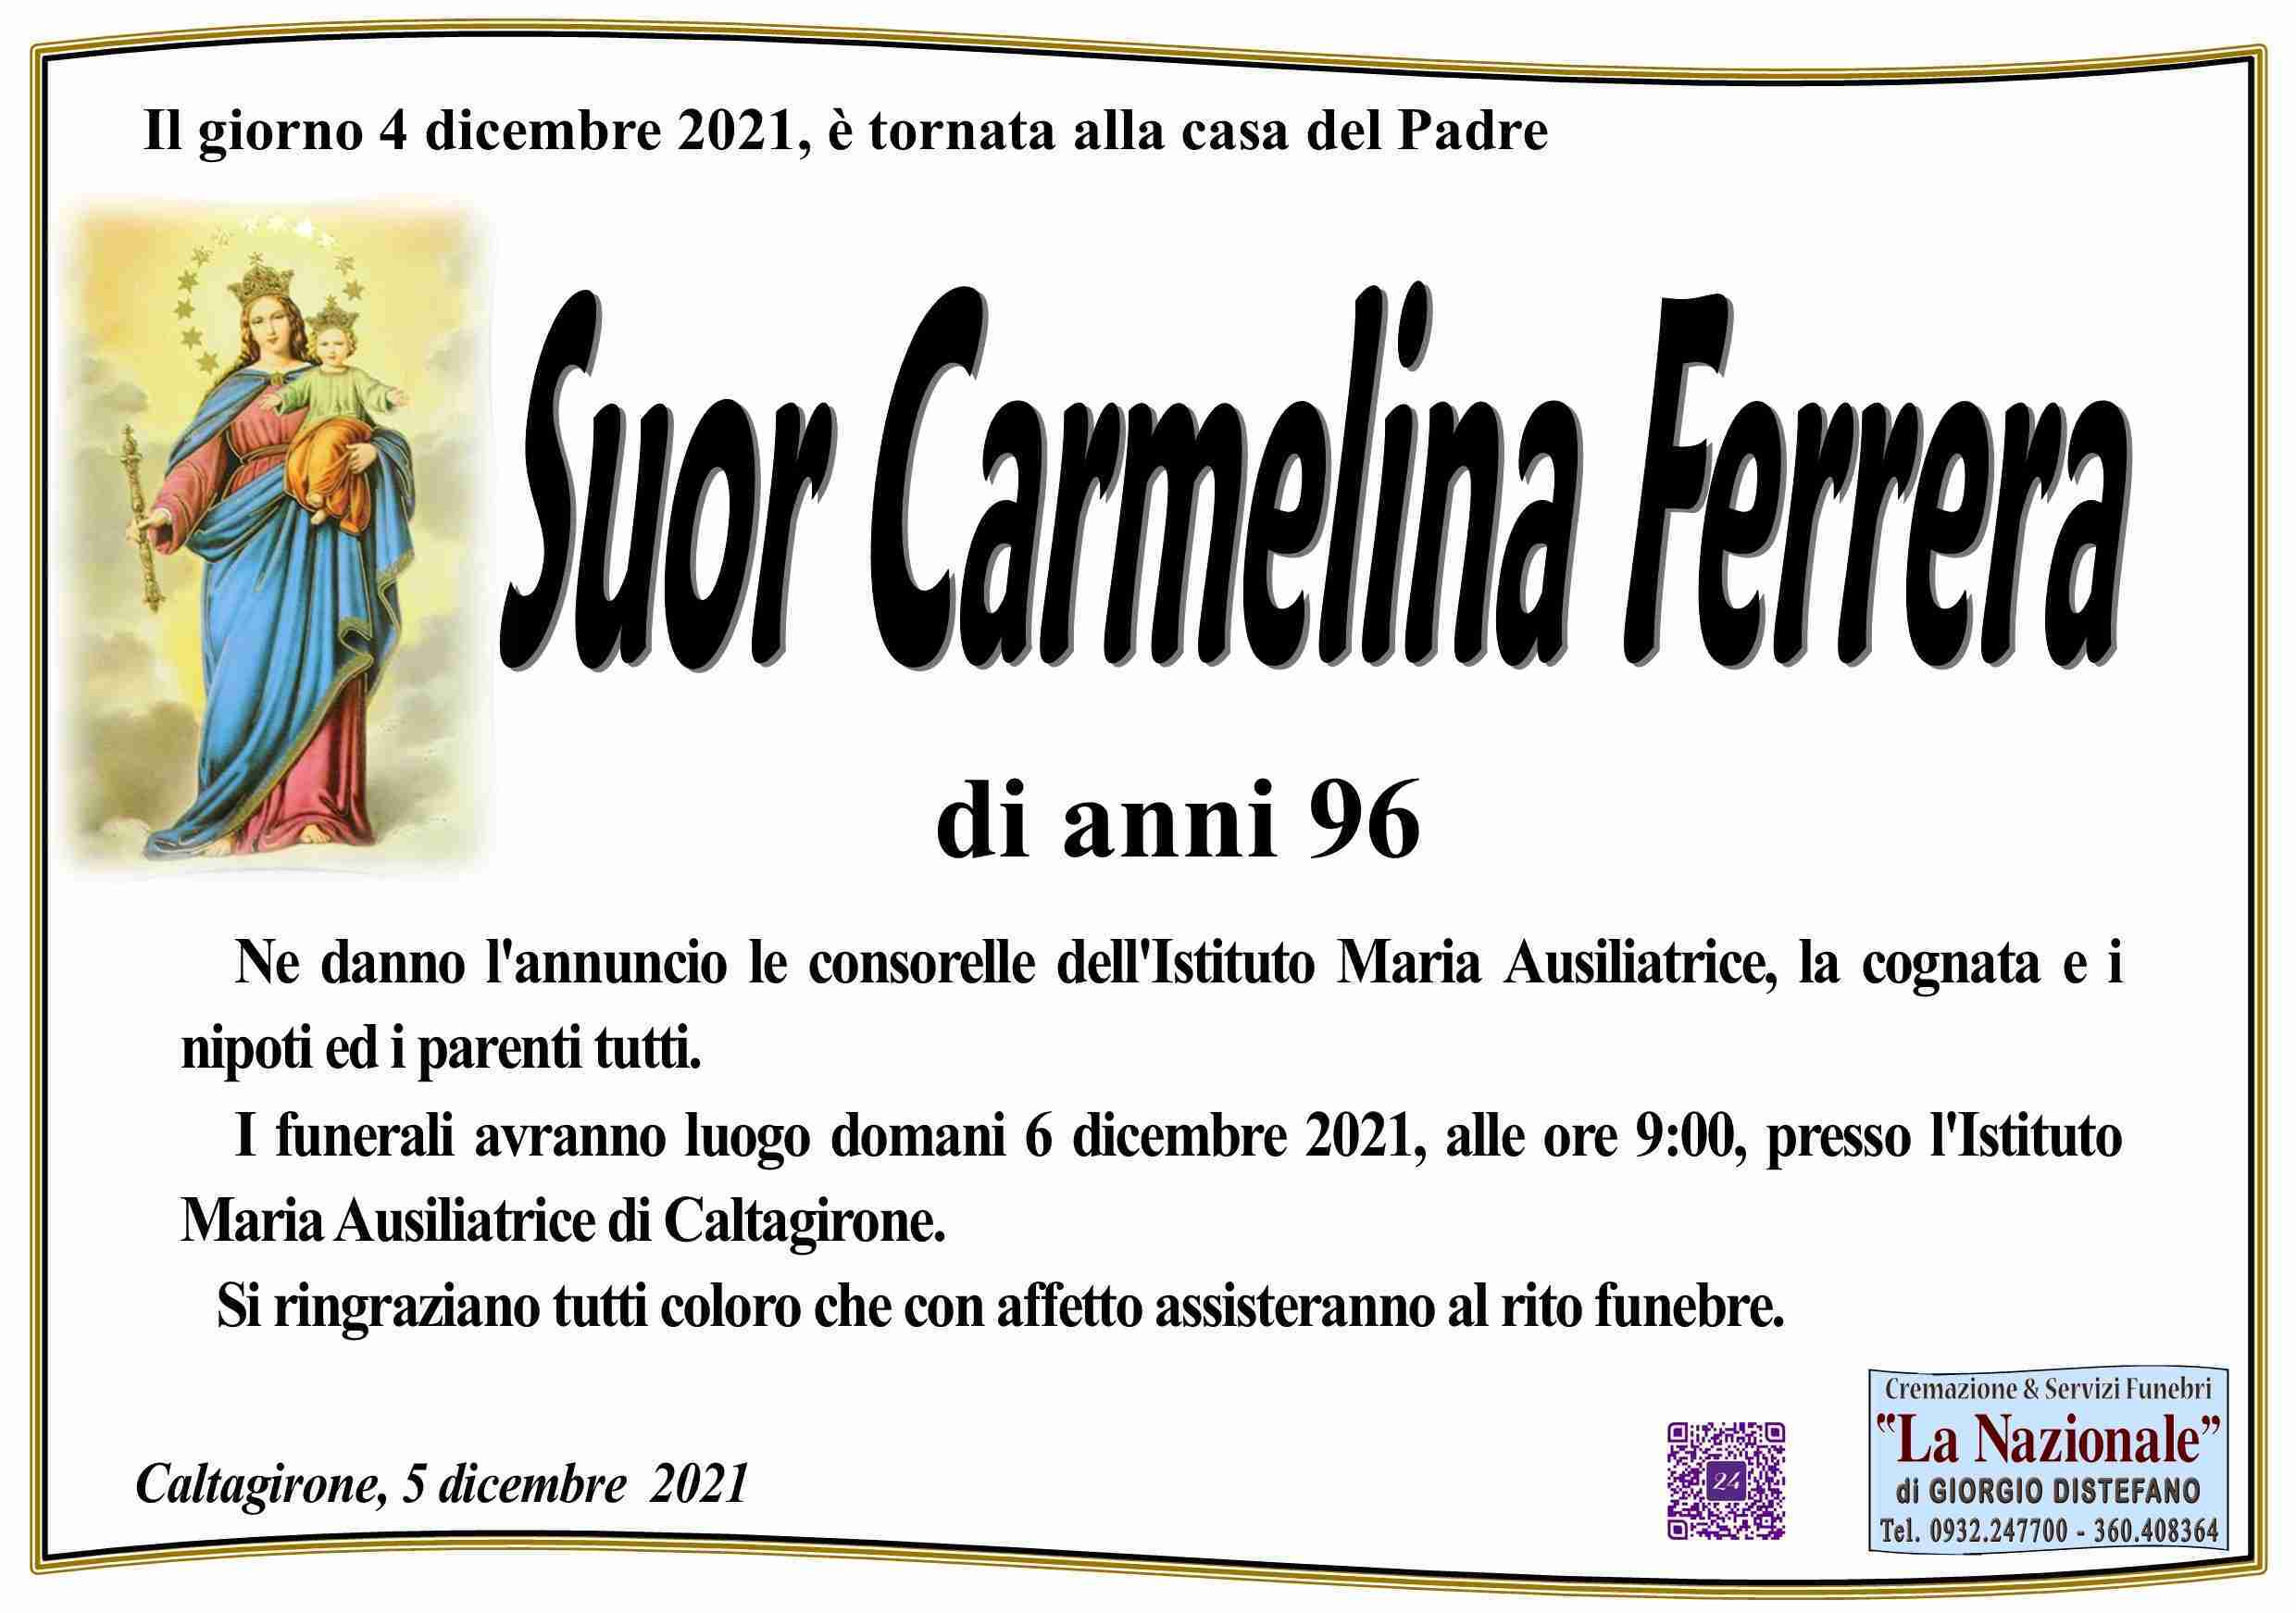 Carmelina Ferrera